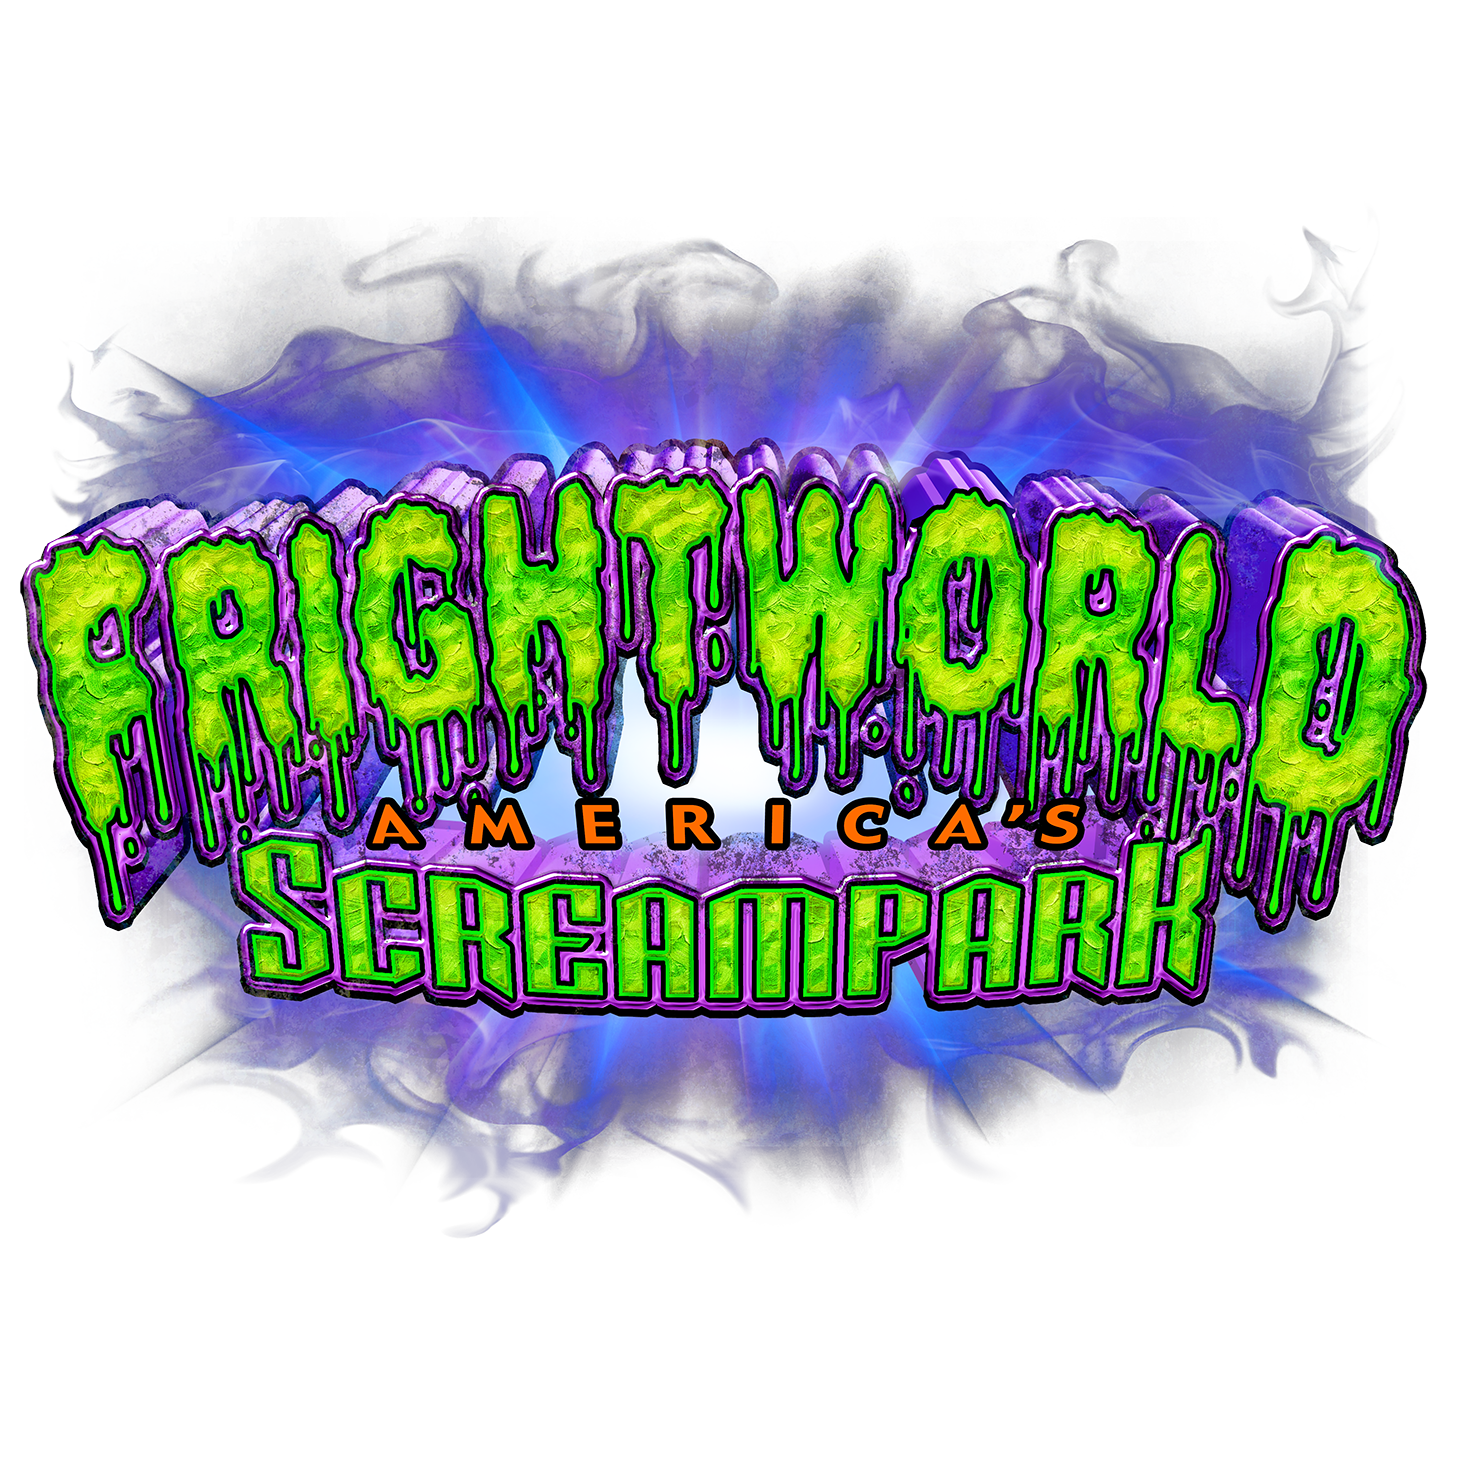 Frightworld, America's Screampark Photo